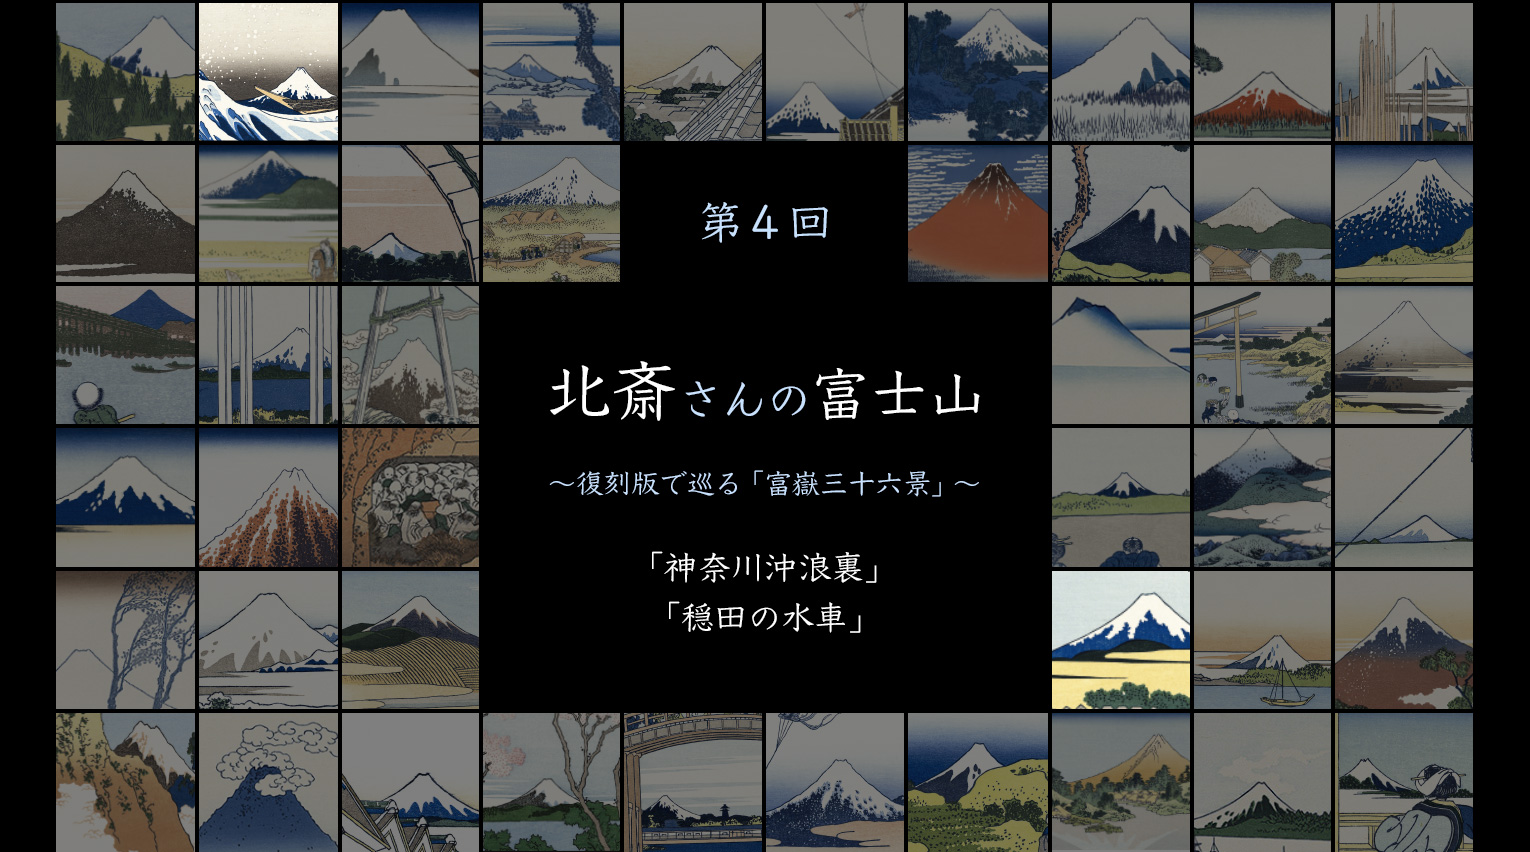 北斎さんの富士山 〜復刻版で巡る「富嶽三十六景」〜 (4)【PR】